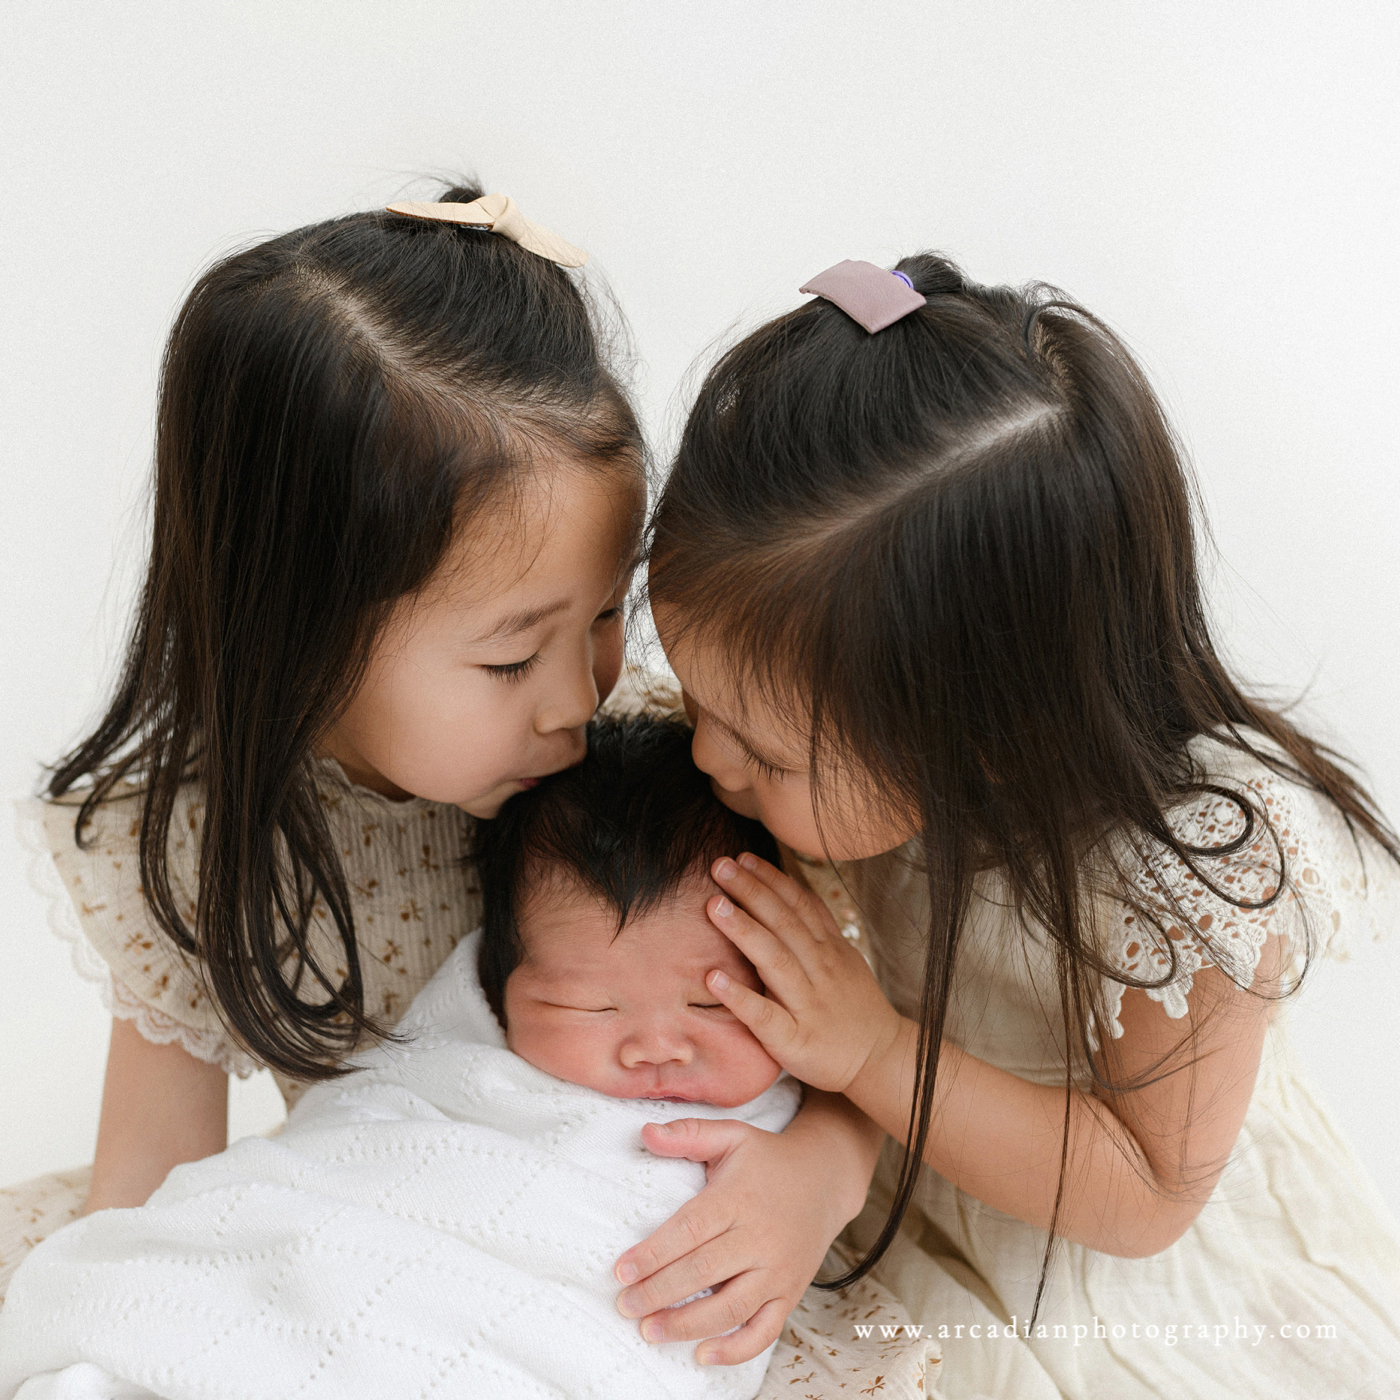 Bib sisters kiss newborn baby brother.